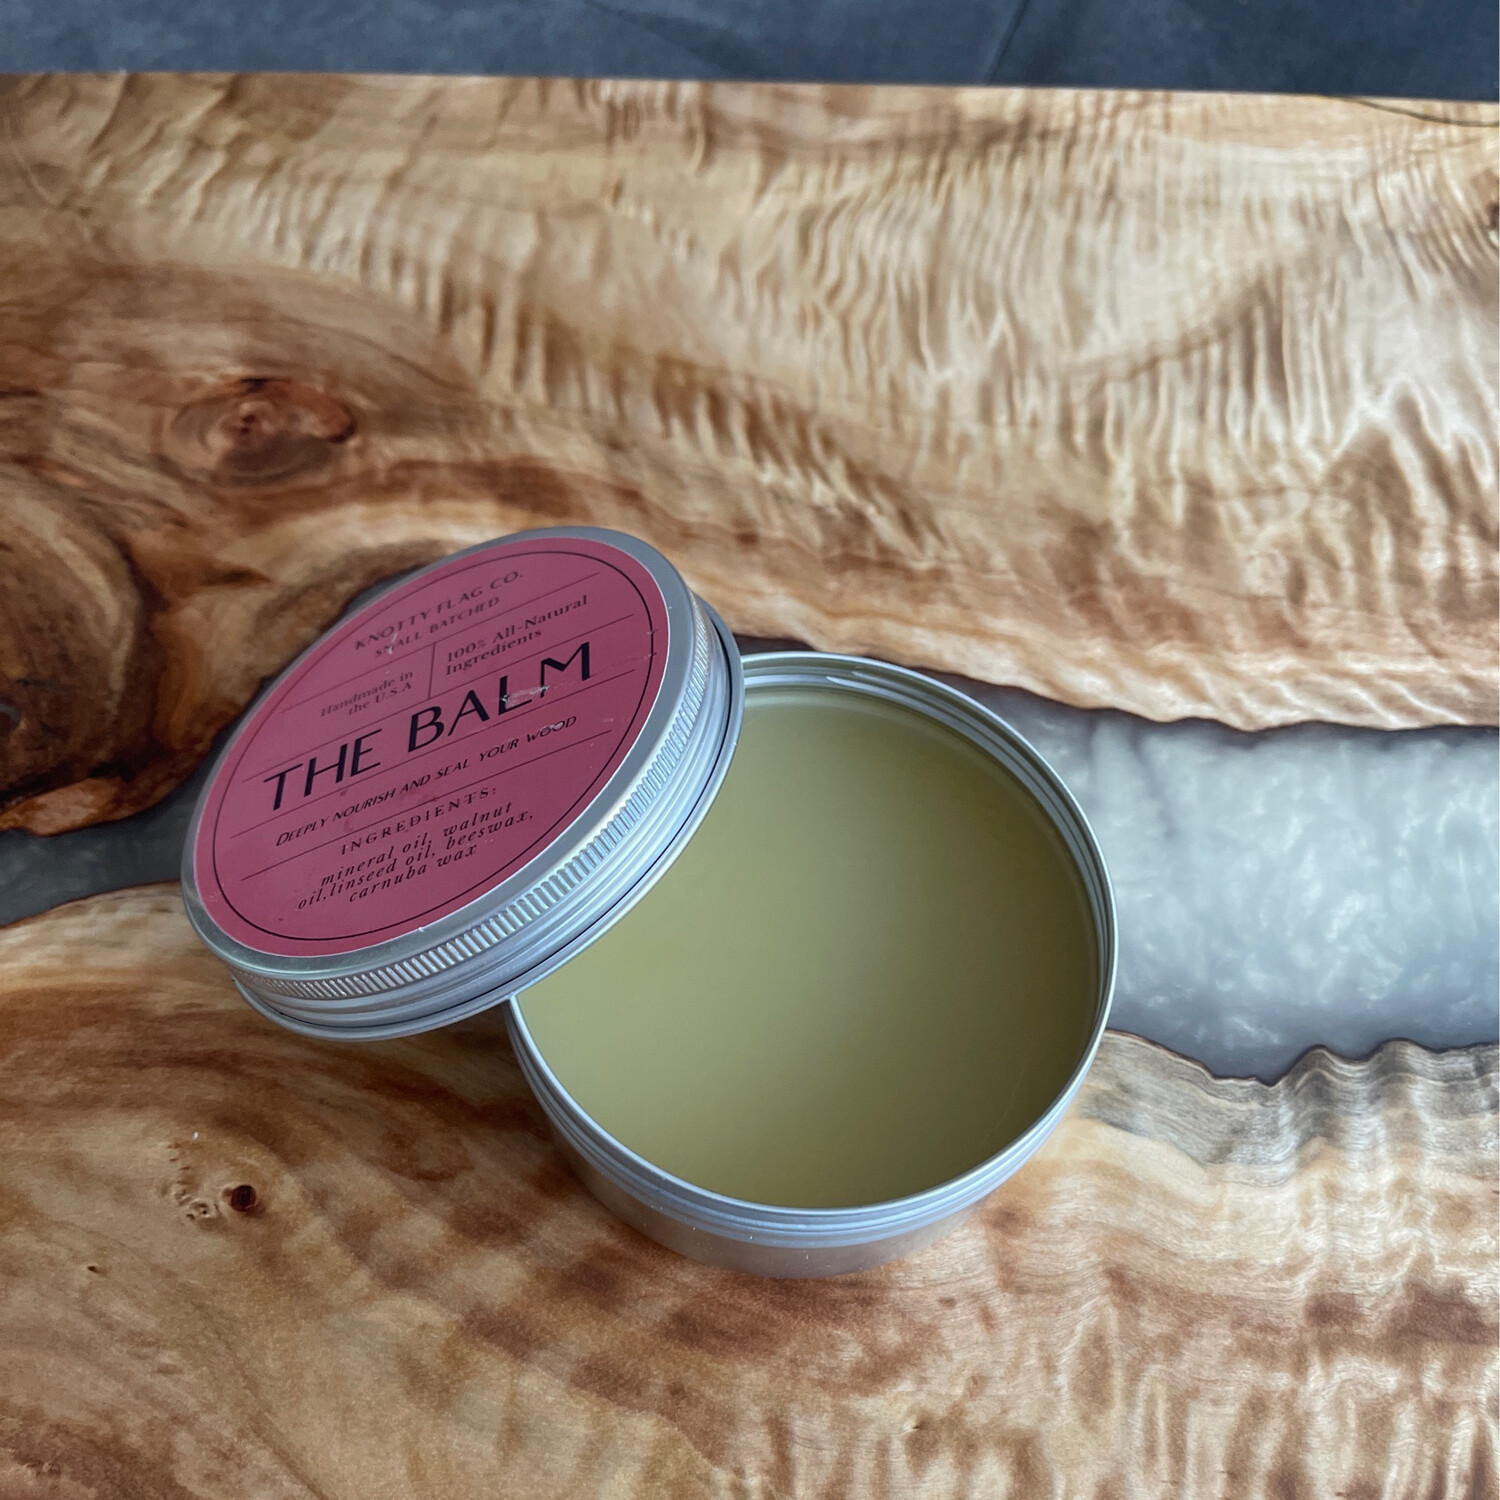 “ The Balm “ Wood Wax Butter